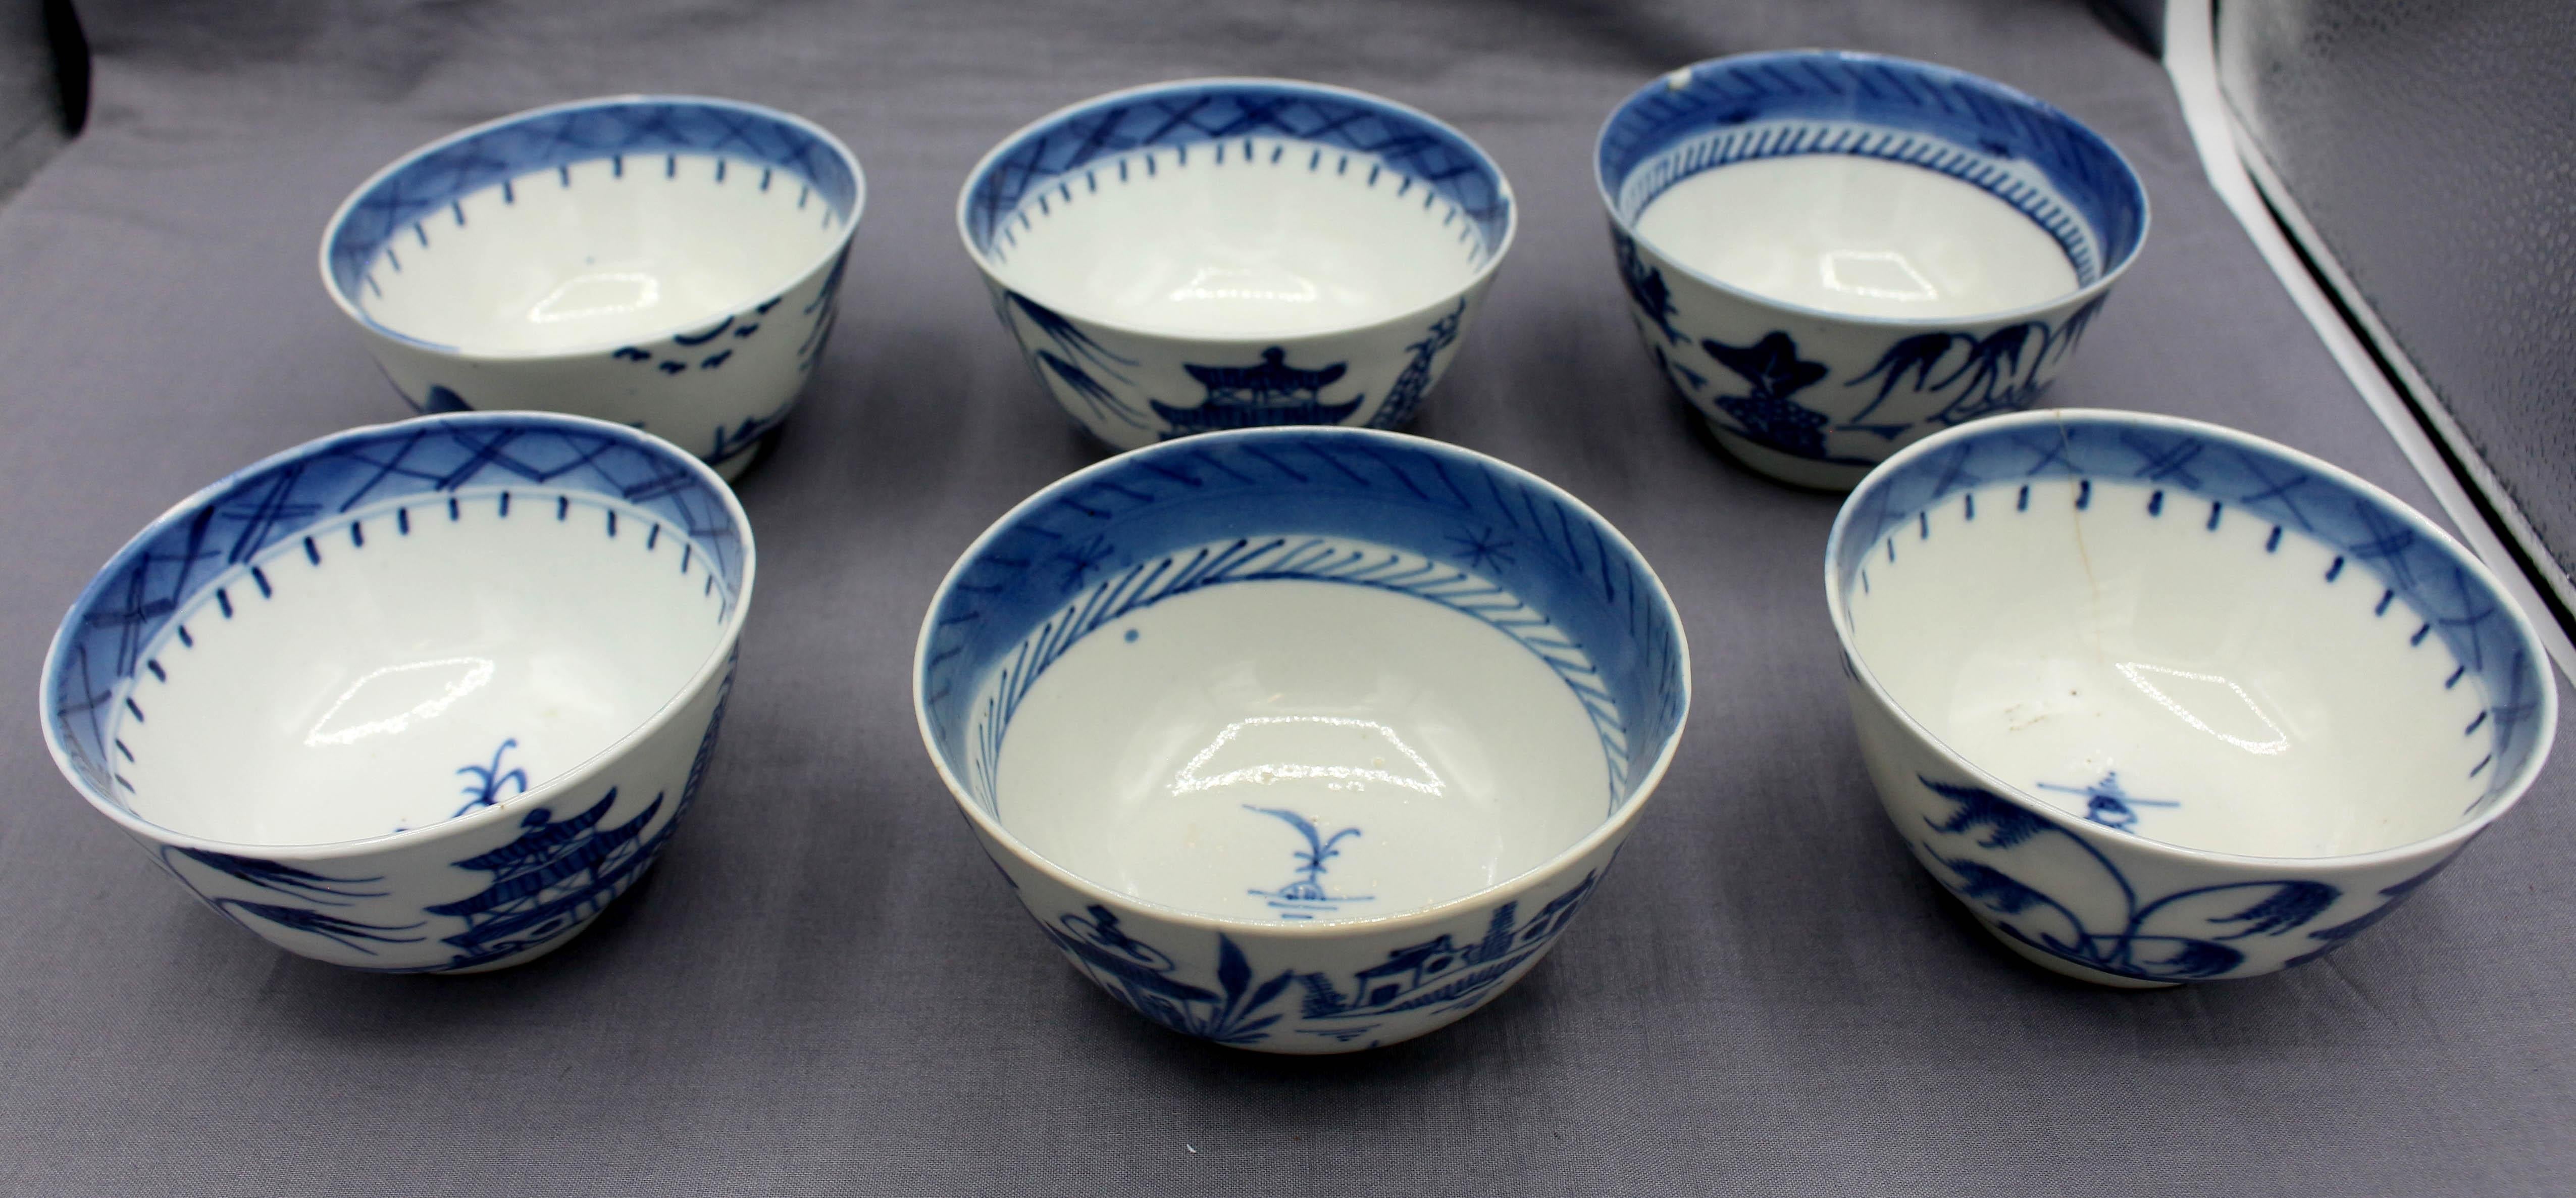 Mitte des 19. Jahrhunderts Gruppe von 6 Reis- oder Suppenschalen aus blauem Kanton-Porzellan, chinesischer Export. Einige Haarrisse und Schrammen. Feine, dünne Töpfchen. 1 mit Haarriss & Chip; 2 mit kleiner Randkerbe; 1 mit